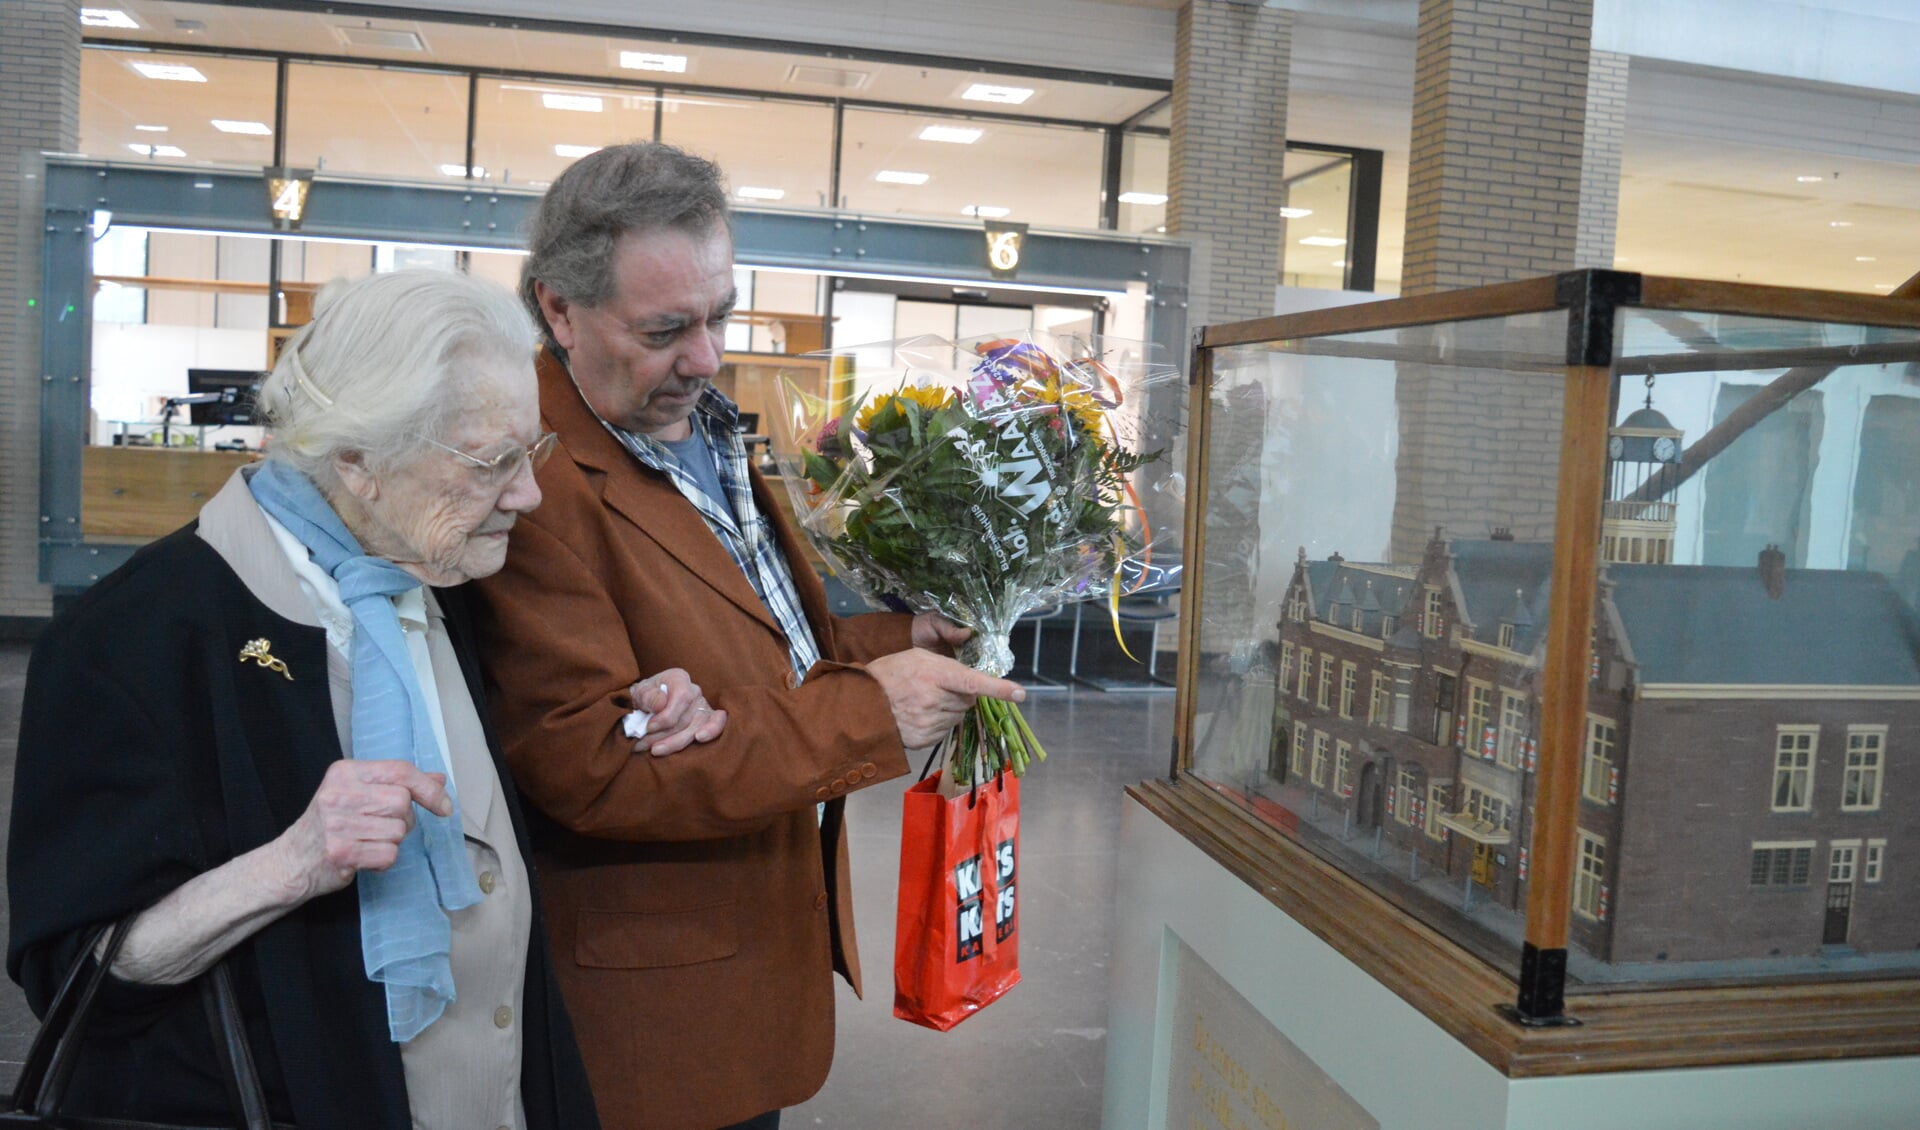 Op bezoek in het gemeentehuis bekeek mevrouw Westbroek met haar zoon ook het oude gemeentehuis